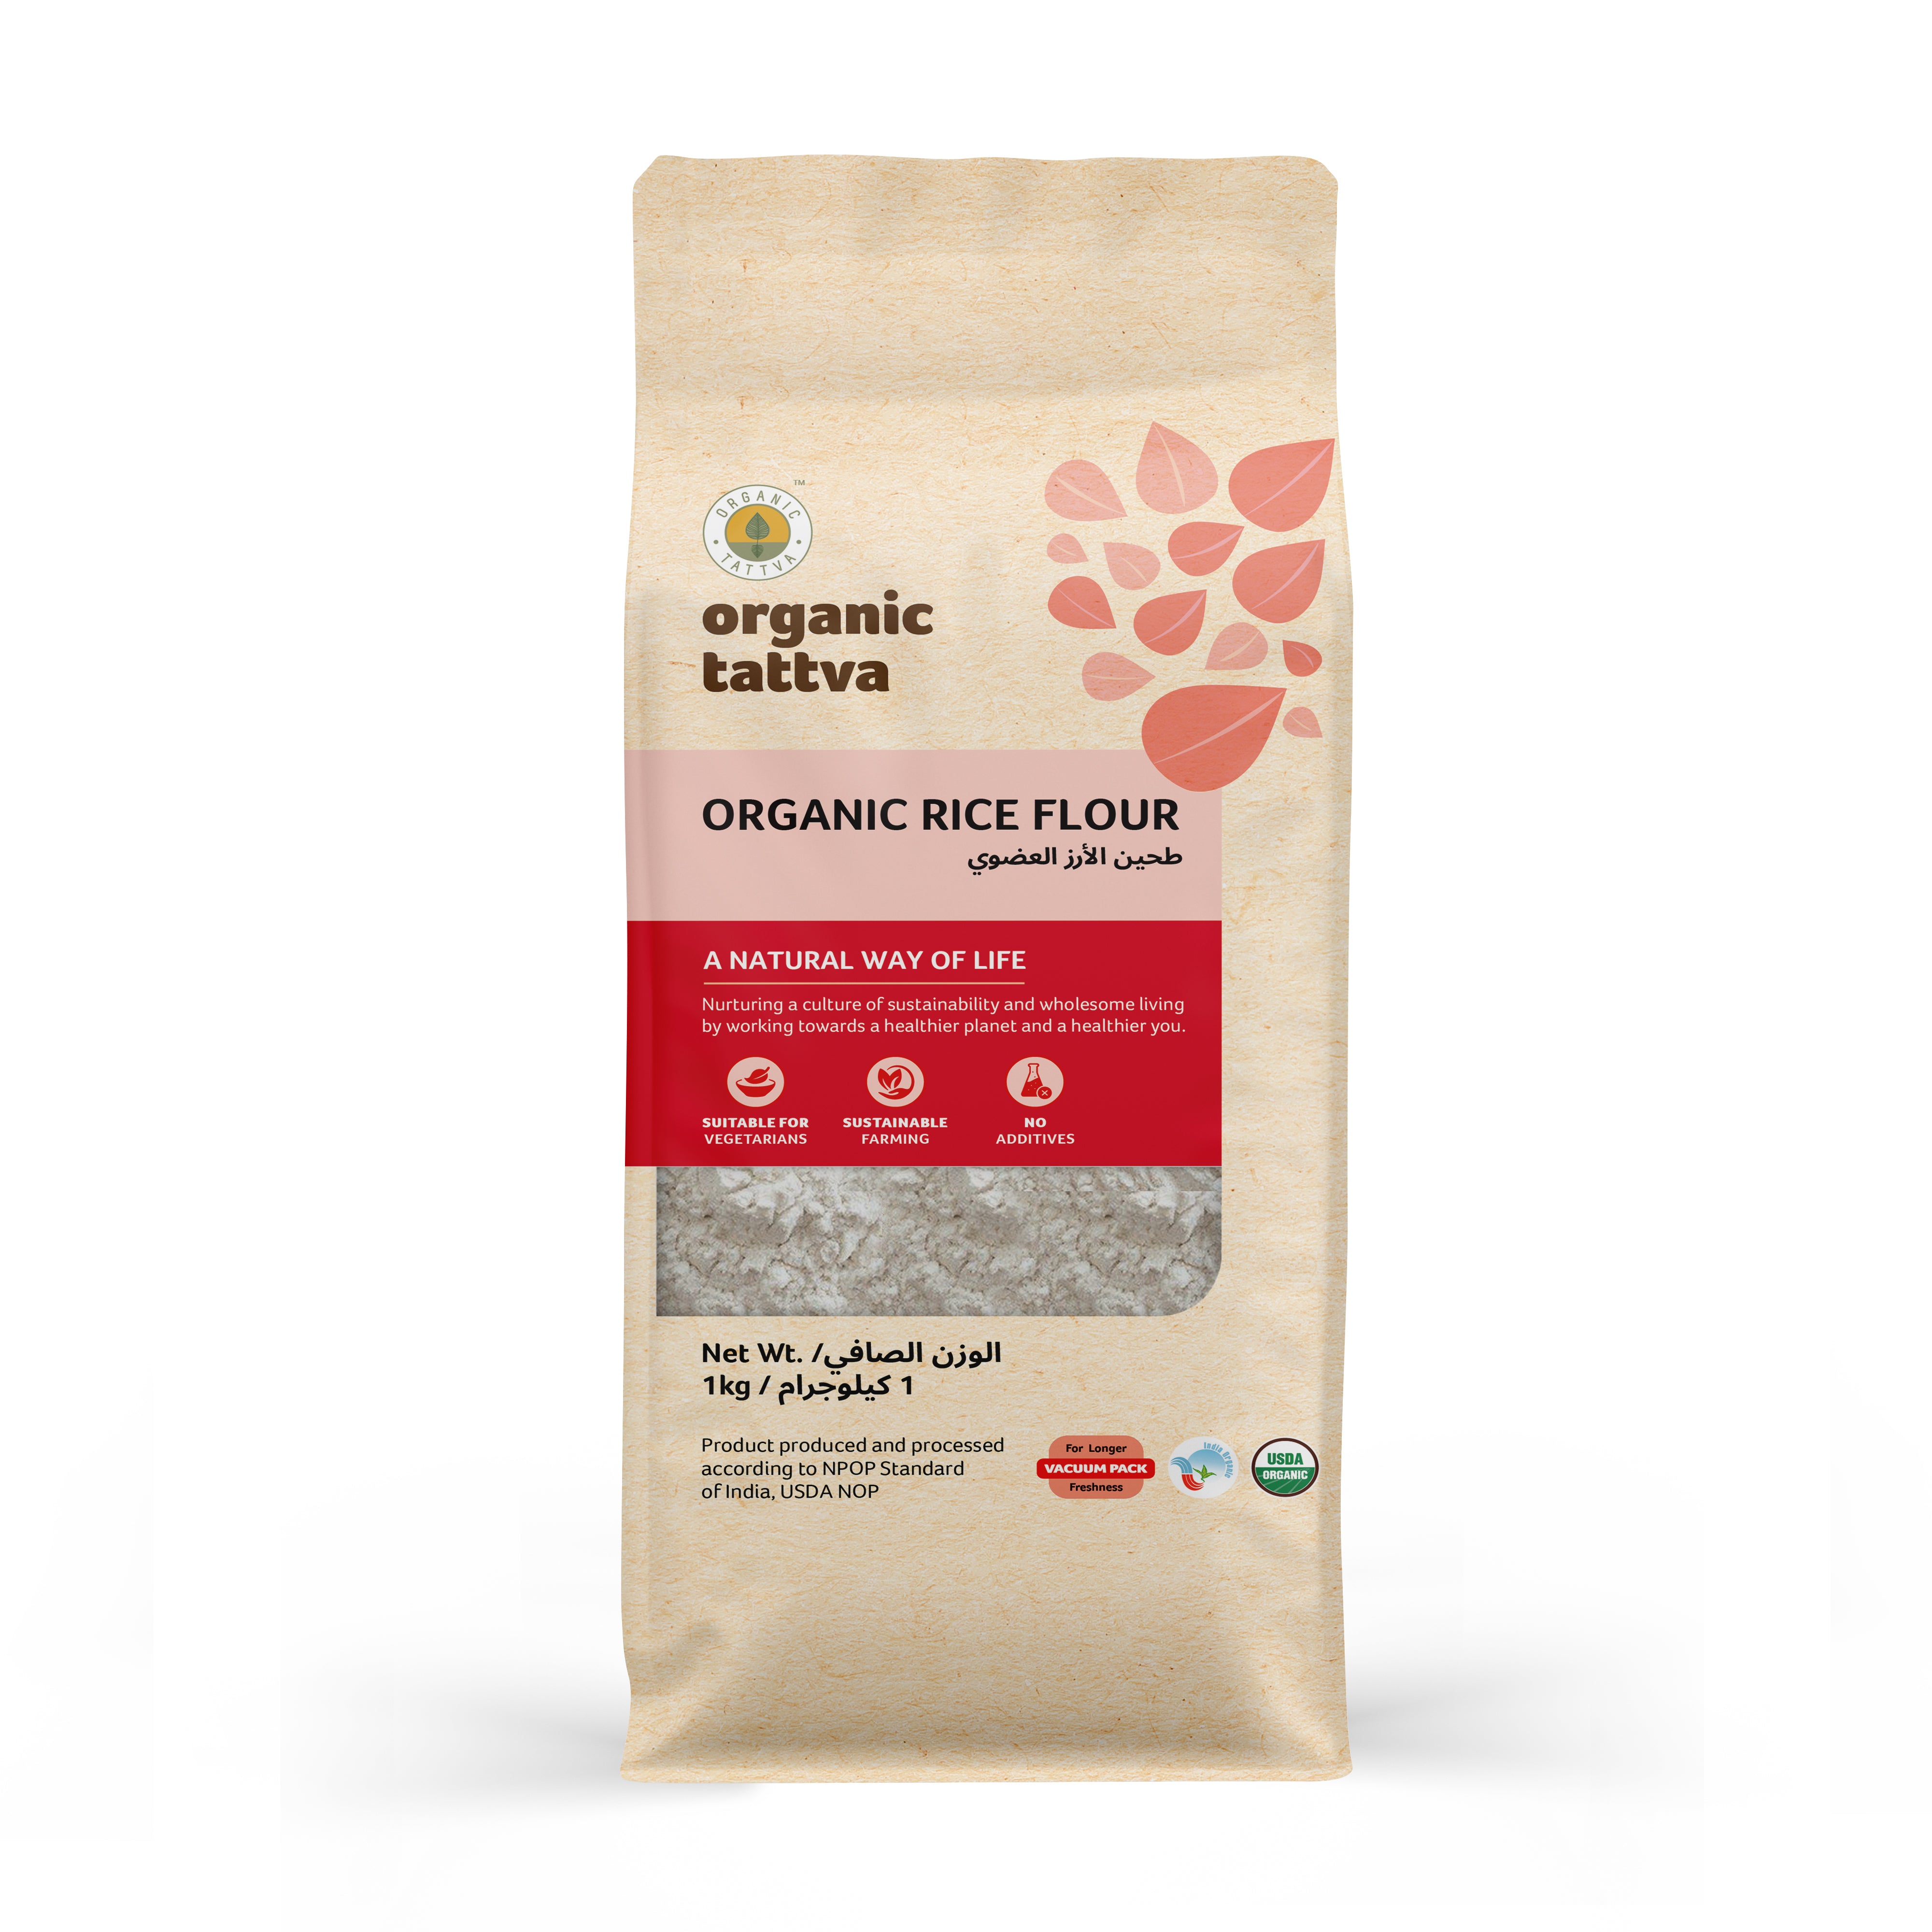 ORGANIC TATTAVA Organic Rice Flour, 1Kg - Organic, Vegan